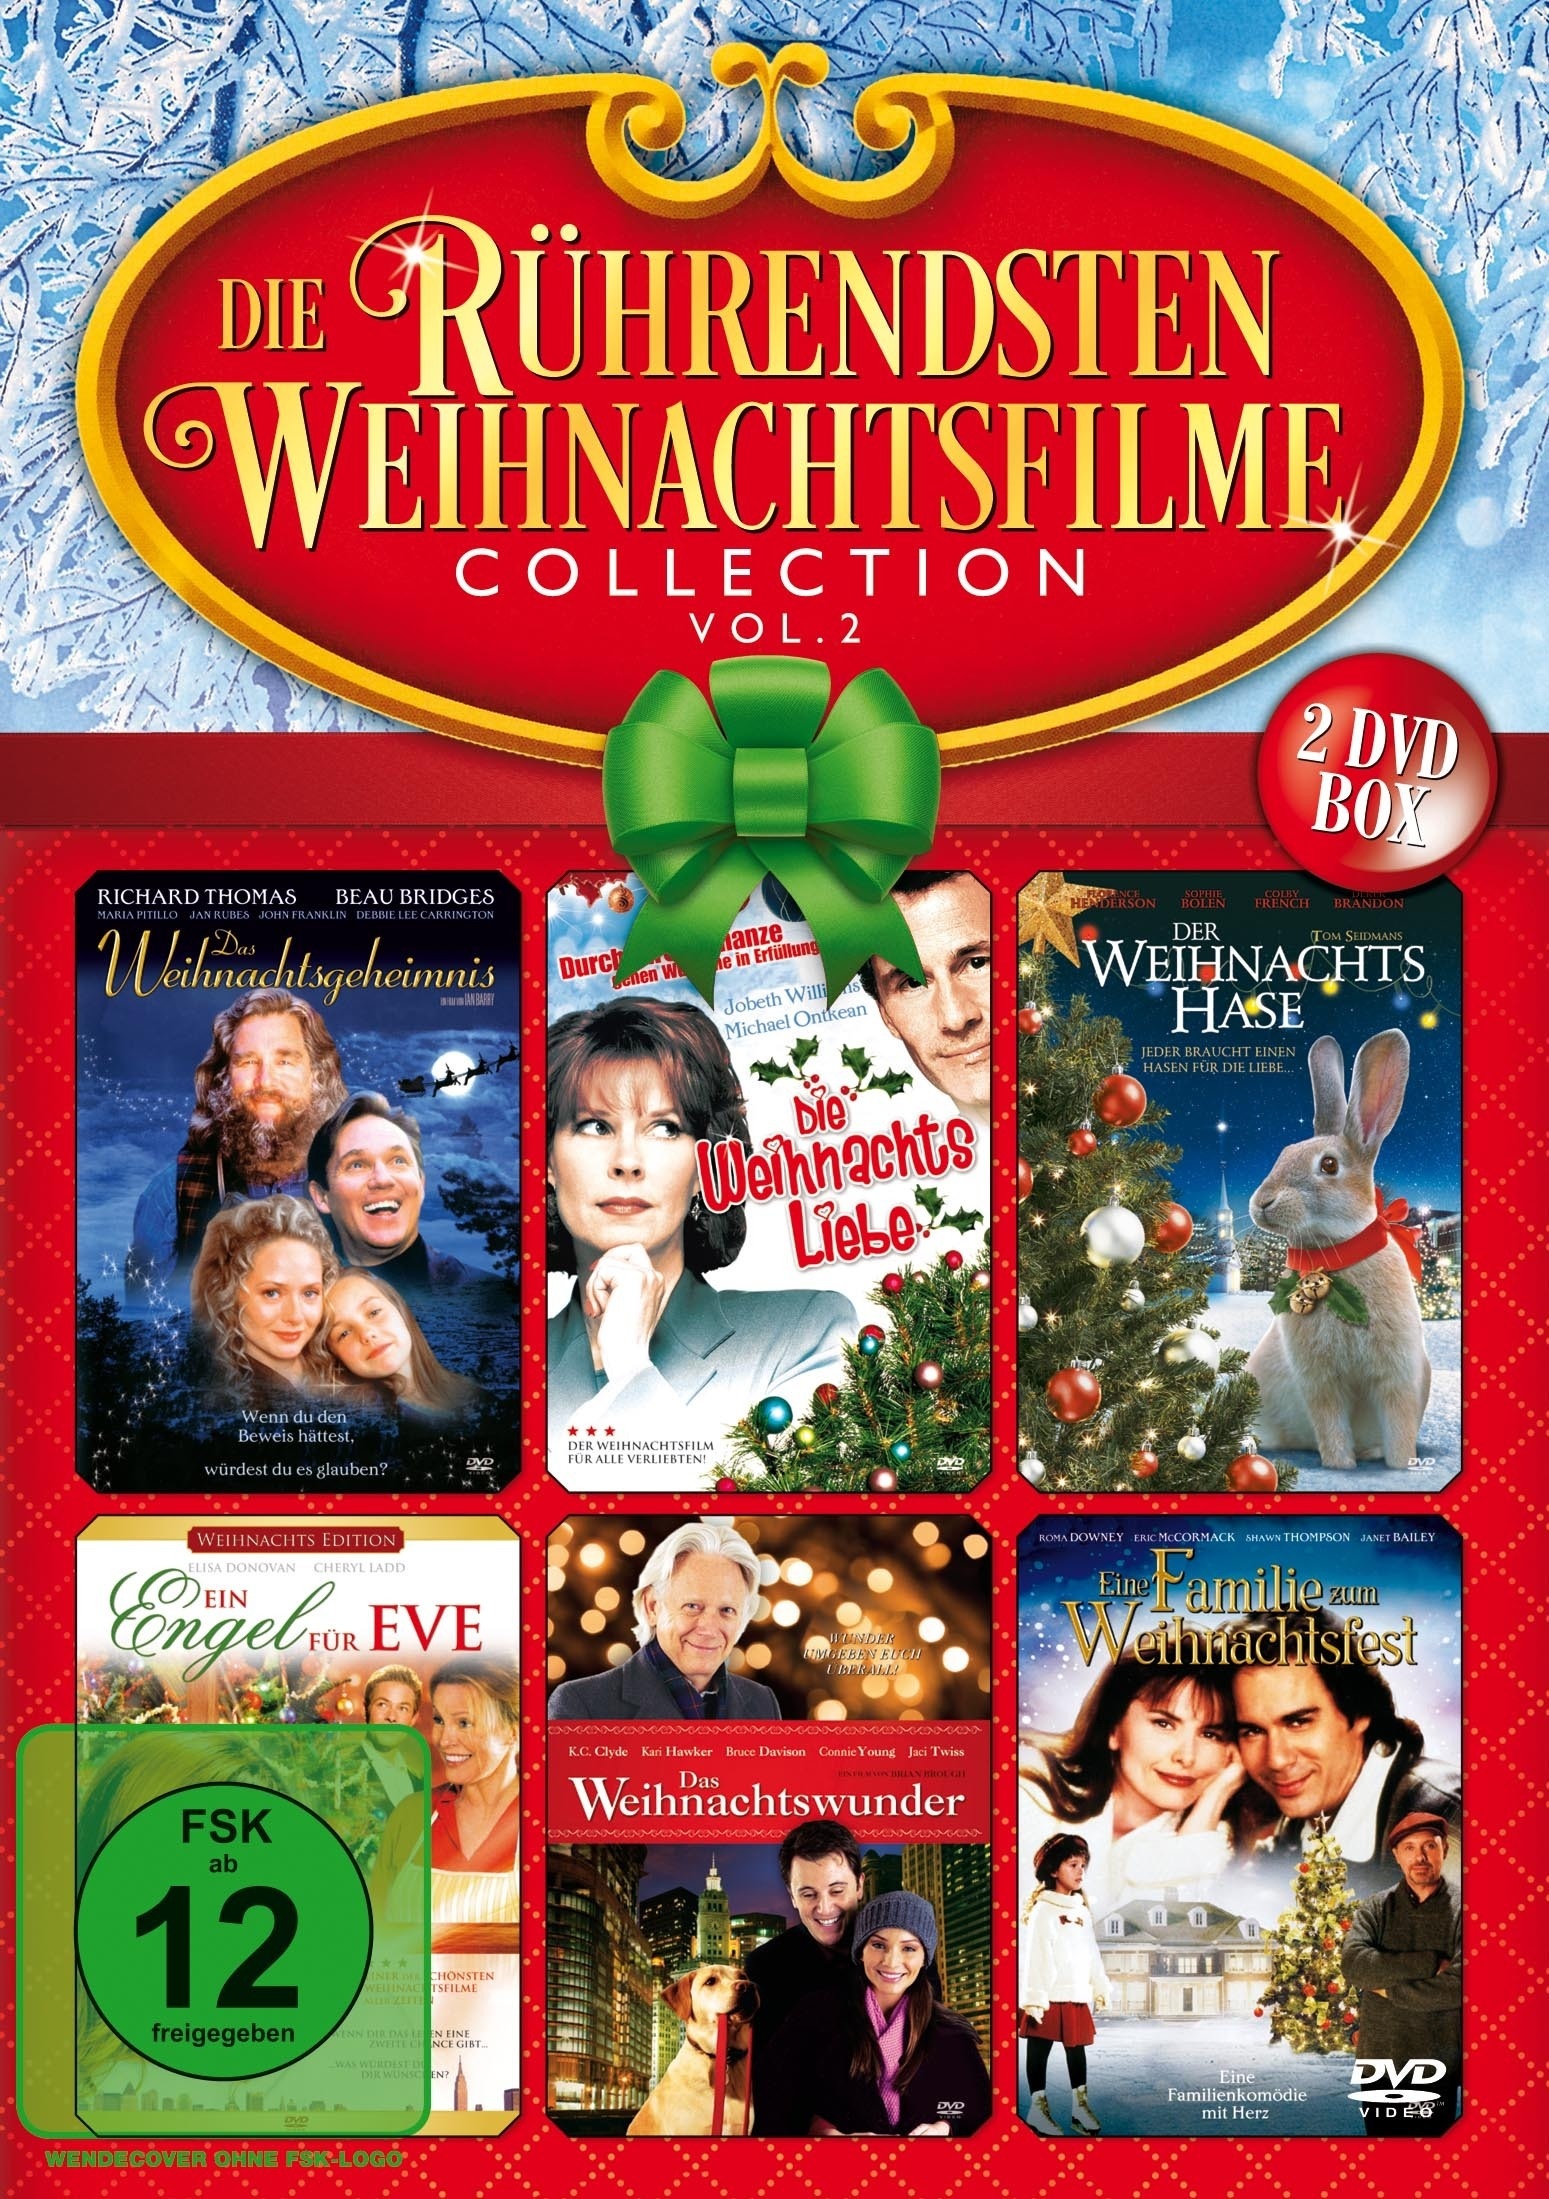 Die Rührendsten Weihnachtsfilme Collection Vol. 2 (DVD)